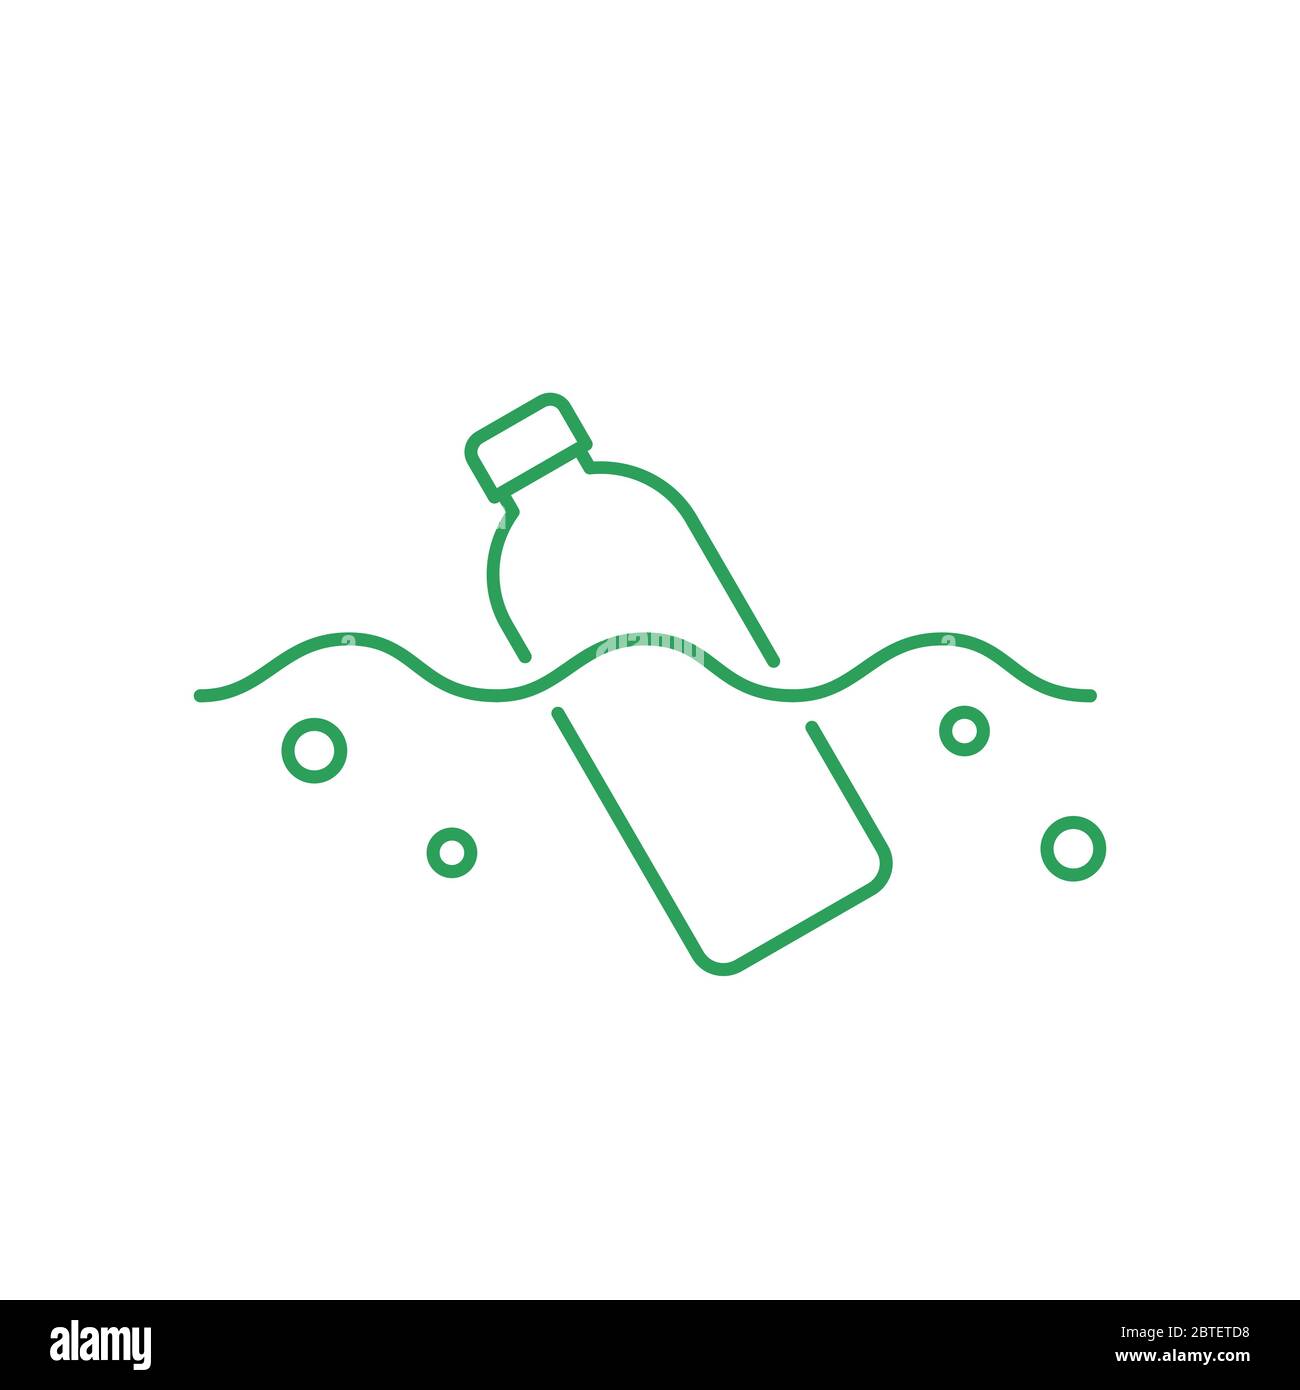 Flasche schwimmt in einem Ozean oder einem Fluss. Symbol für dünne Linie. Konzept der Kunststoffverschmutzung. Umweltproblem, Mikroplastik im Wasser. Grüne Umrandung auf Weiß Stock Vektor